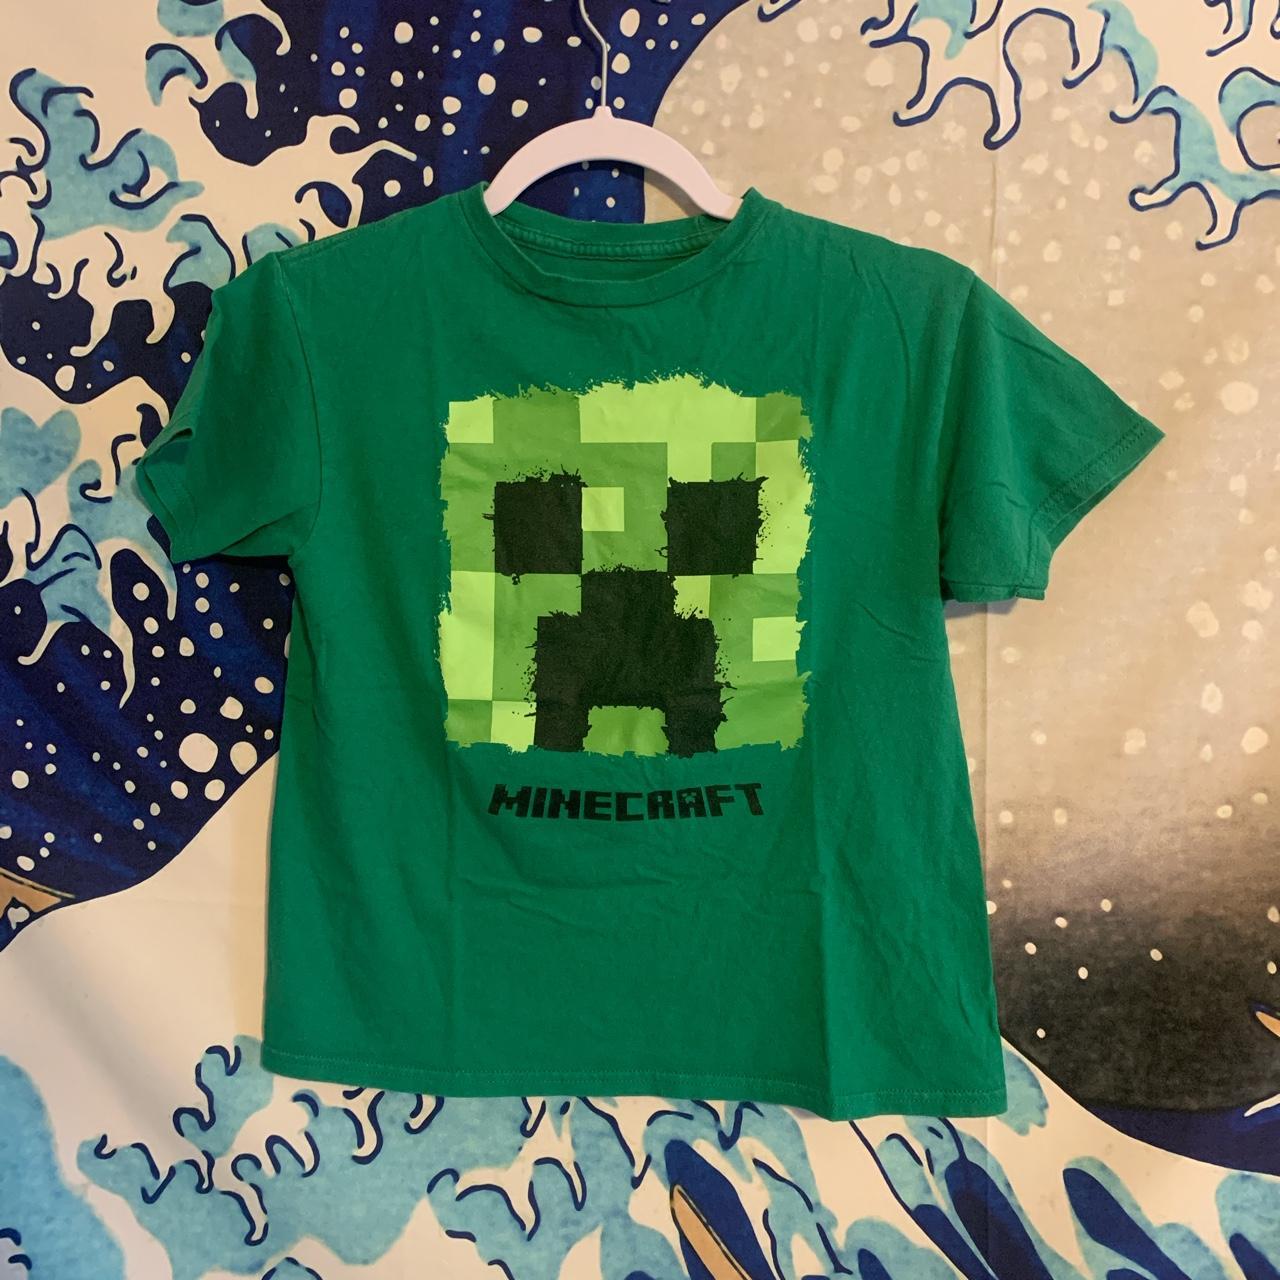 Green T-shirt